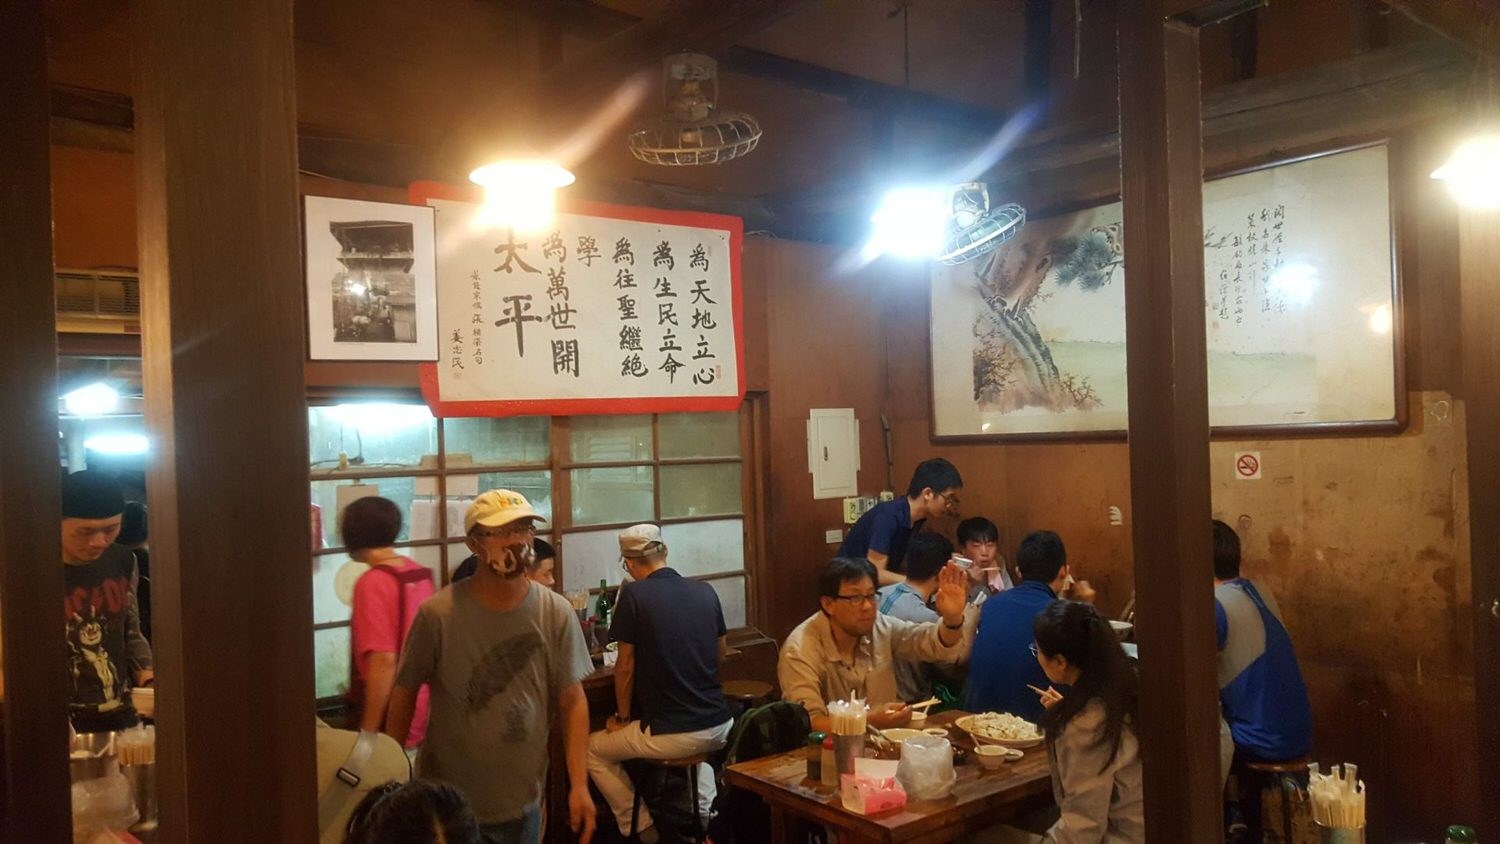 【食記】台北市中正區【龍門客棧餃子館】~我吃的是回憶 | 捷運台大醫院站~台大醫院對面